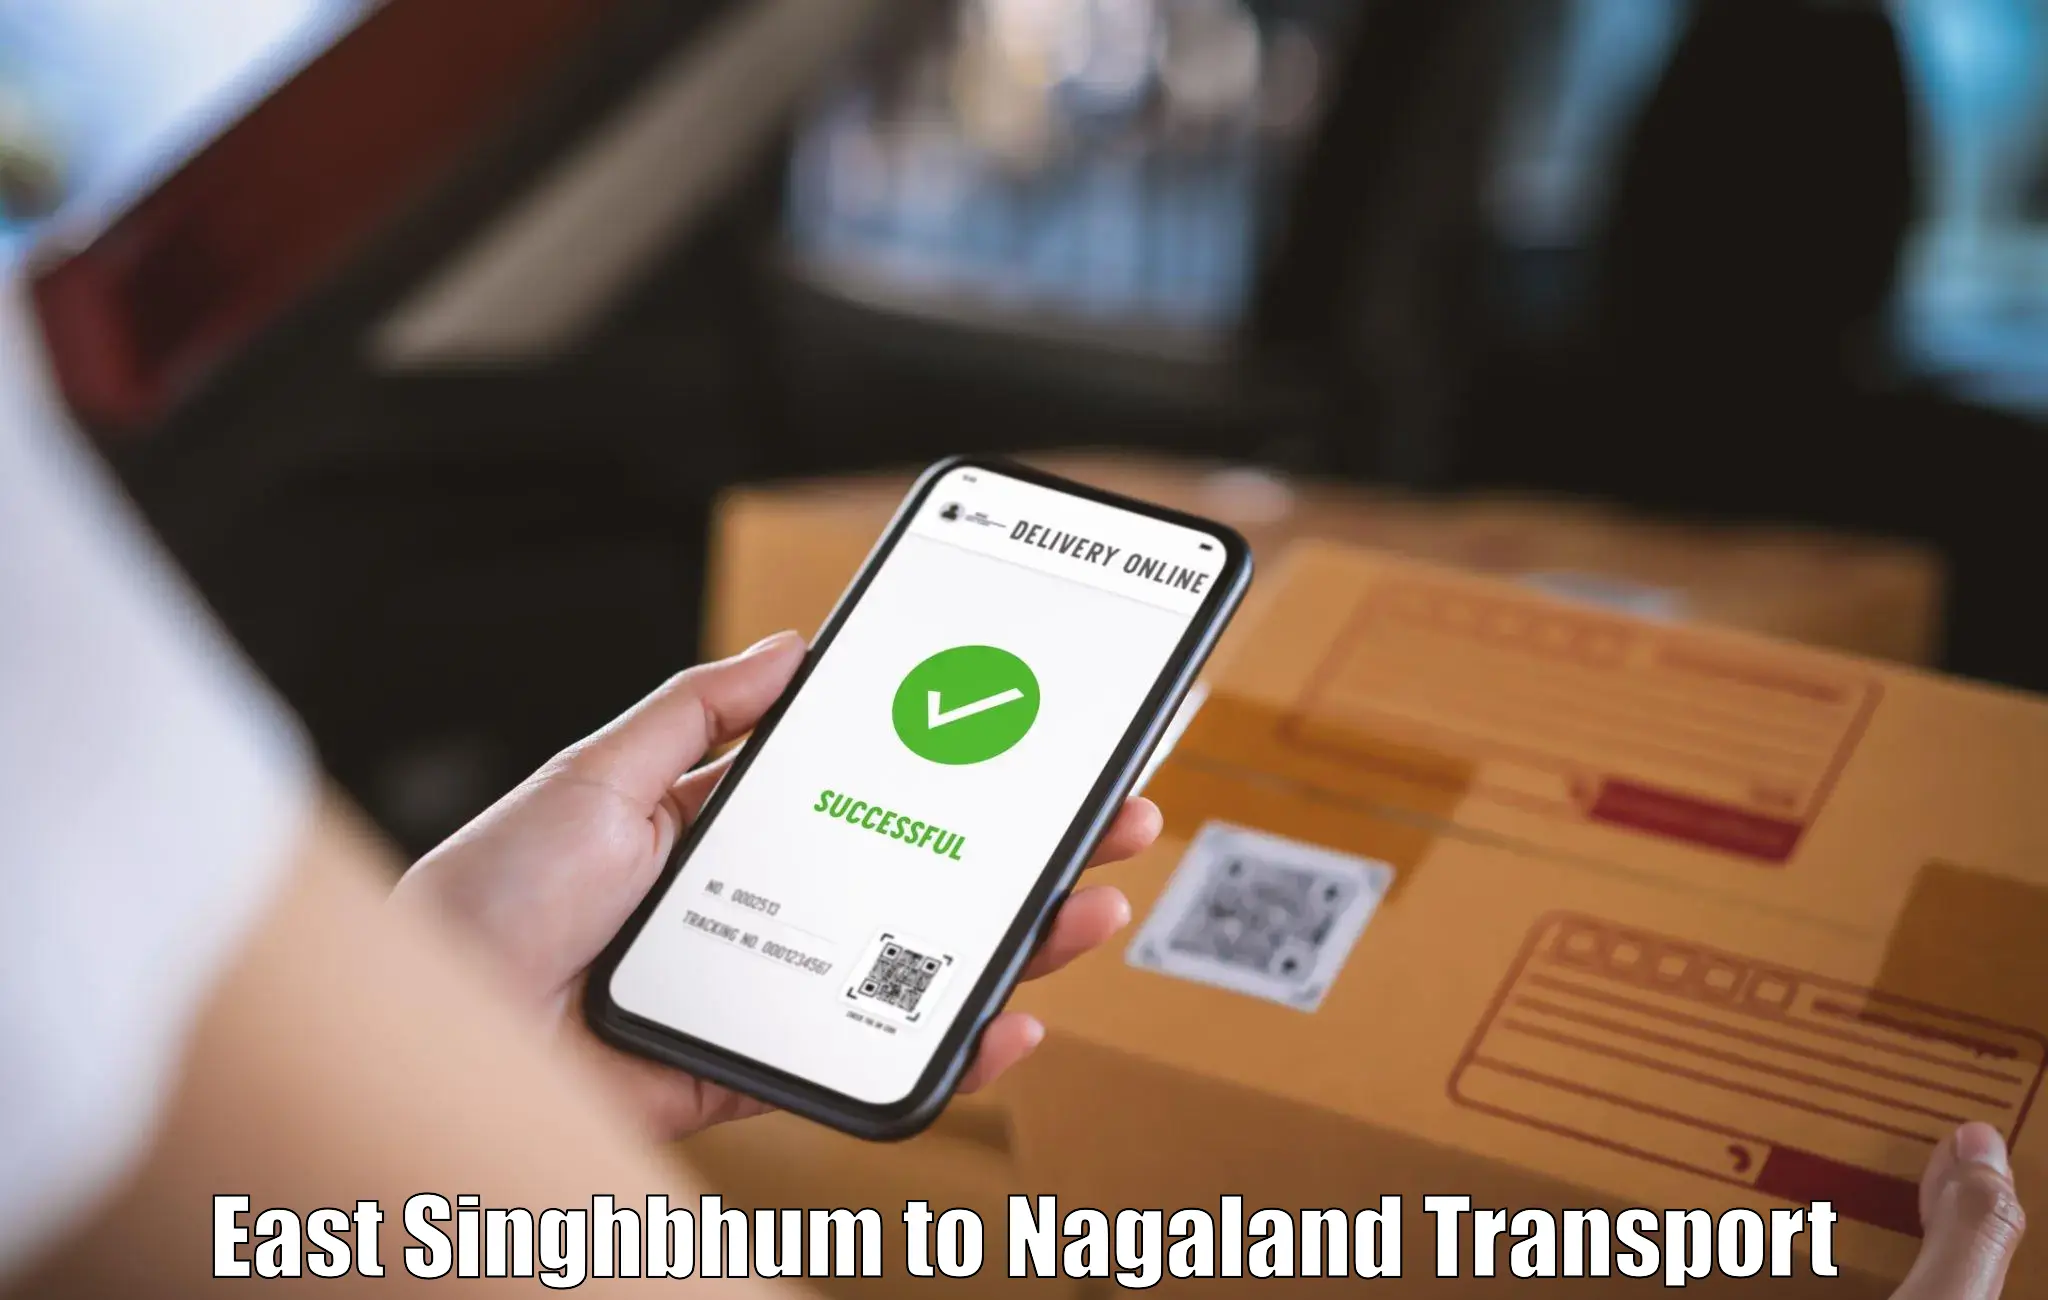 Online transport service East Singhbhum to Longleng